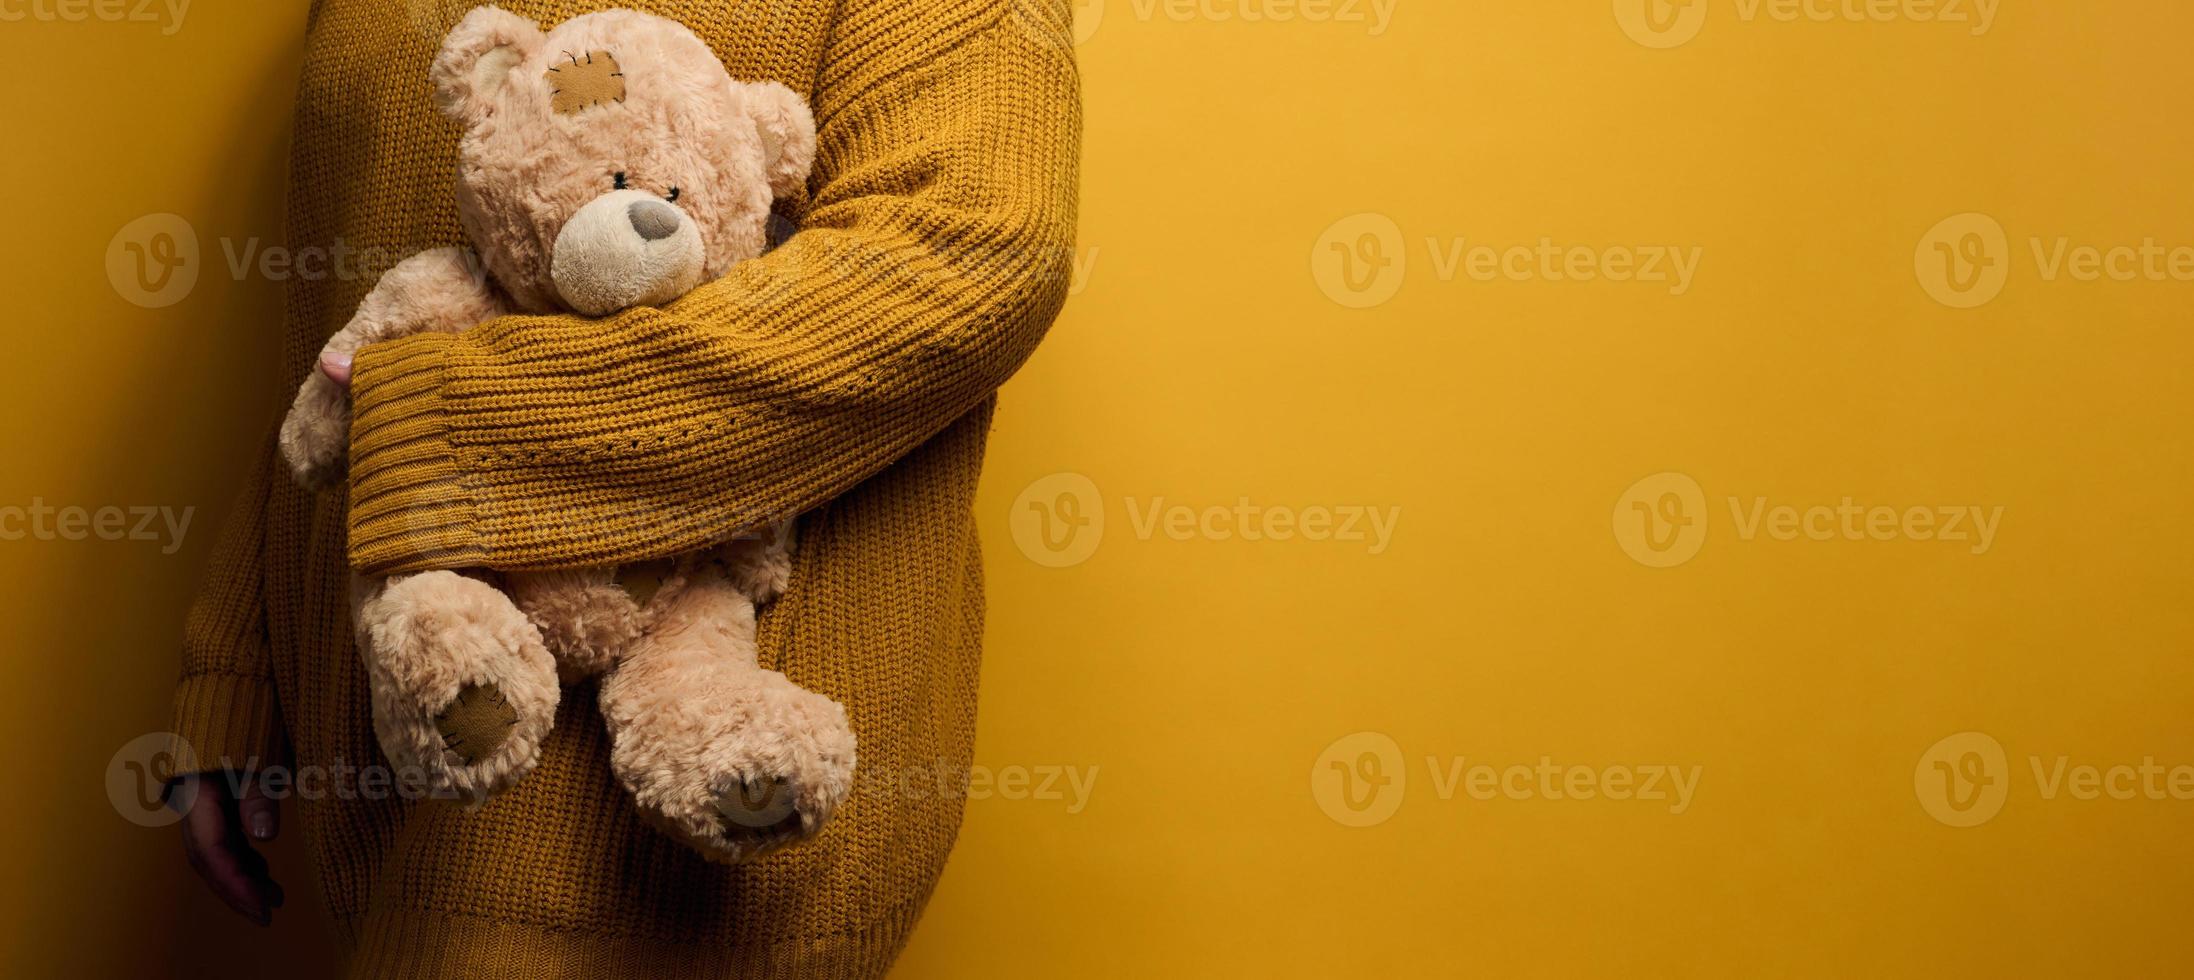 kvinna i orange stickat Tröja kramar söt brun teddy Björn. de begrepp av ensamhet och sorg, depression foto